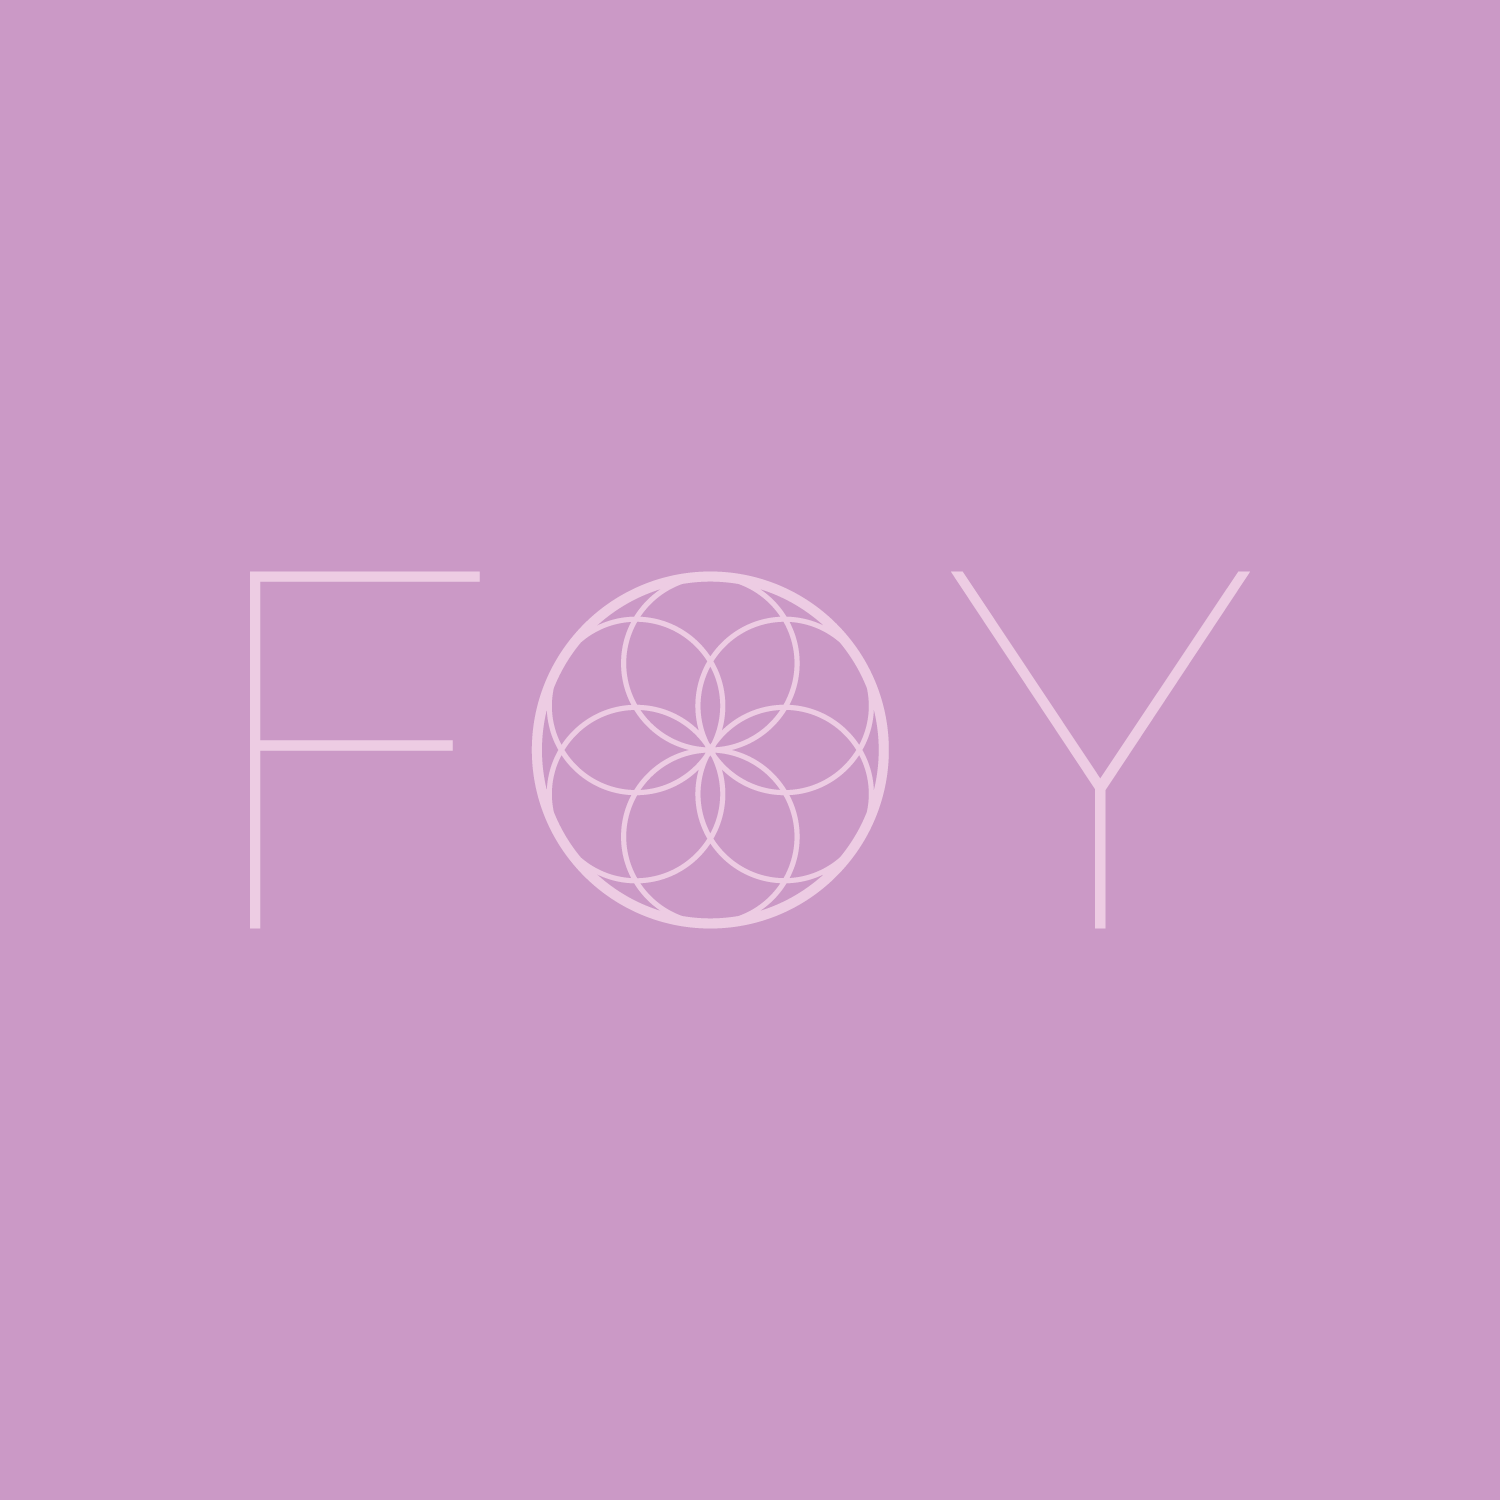 FOY Logo